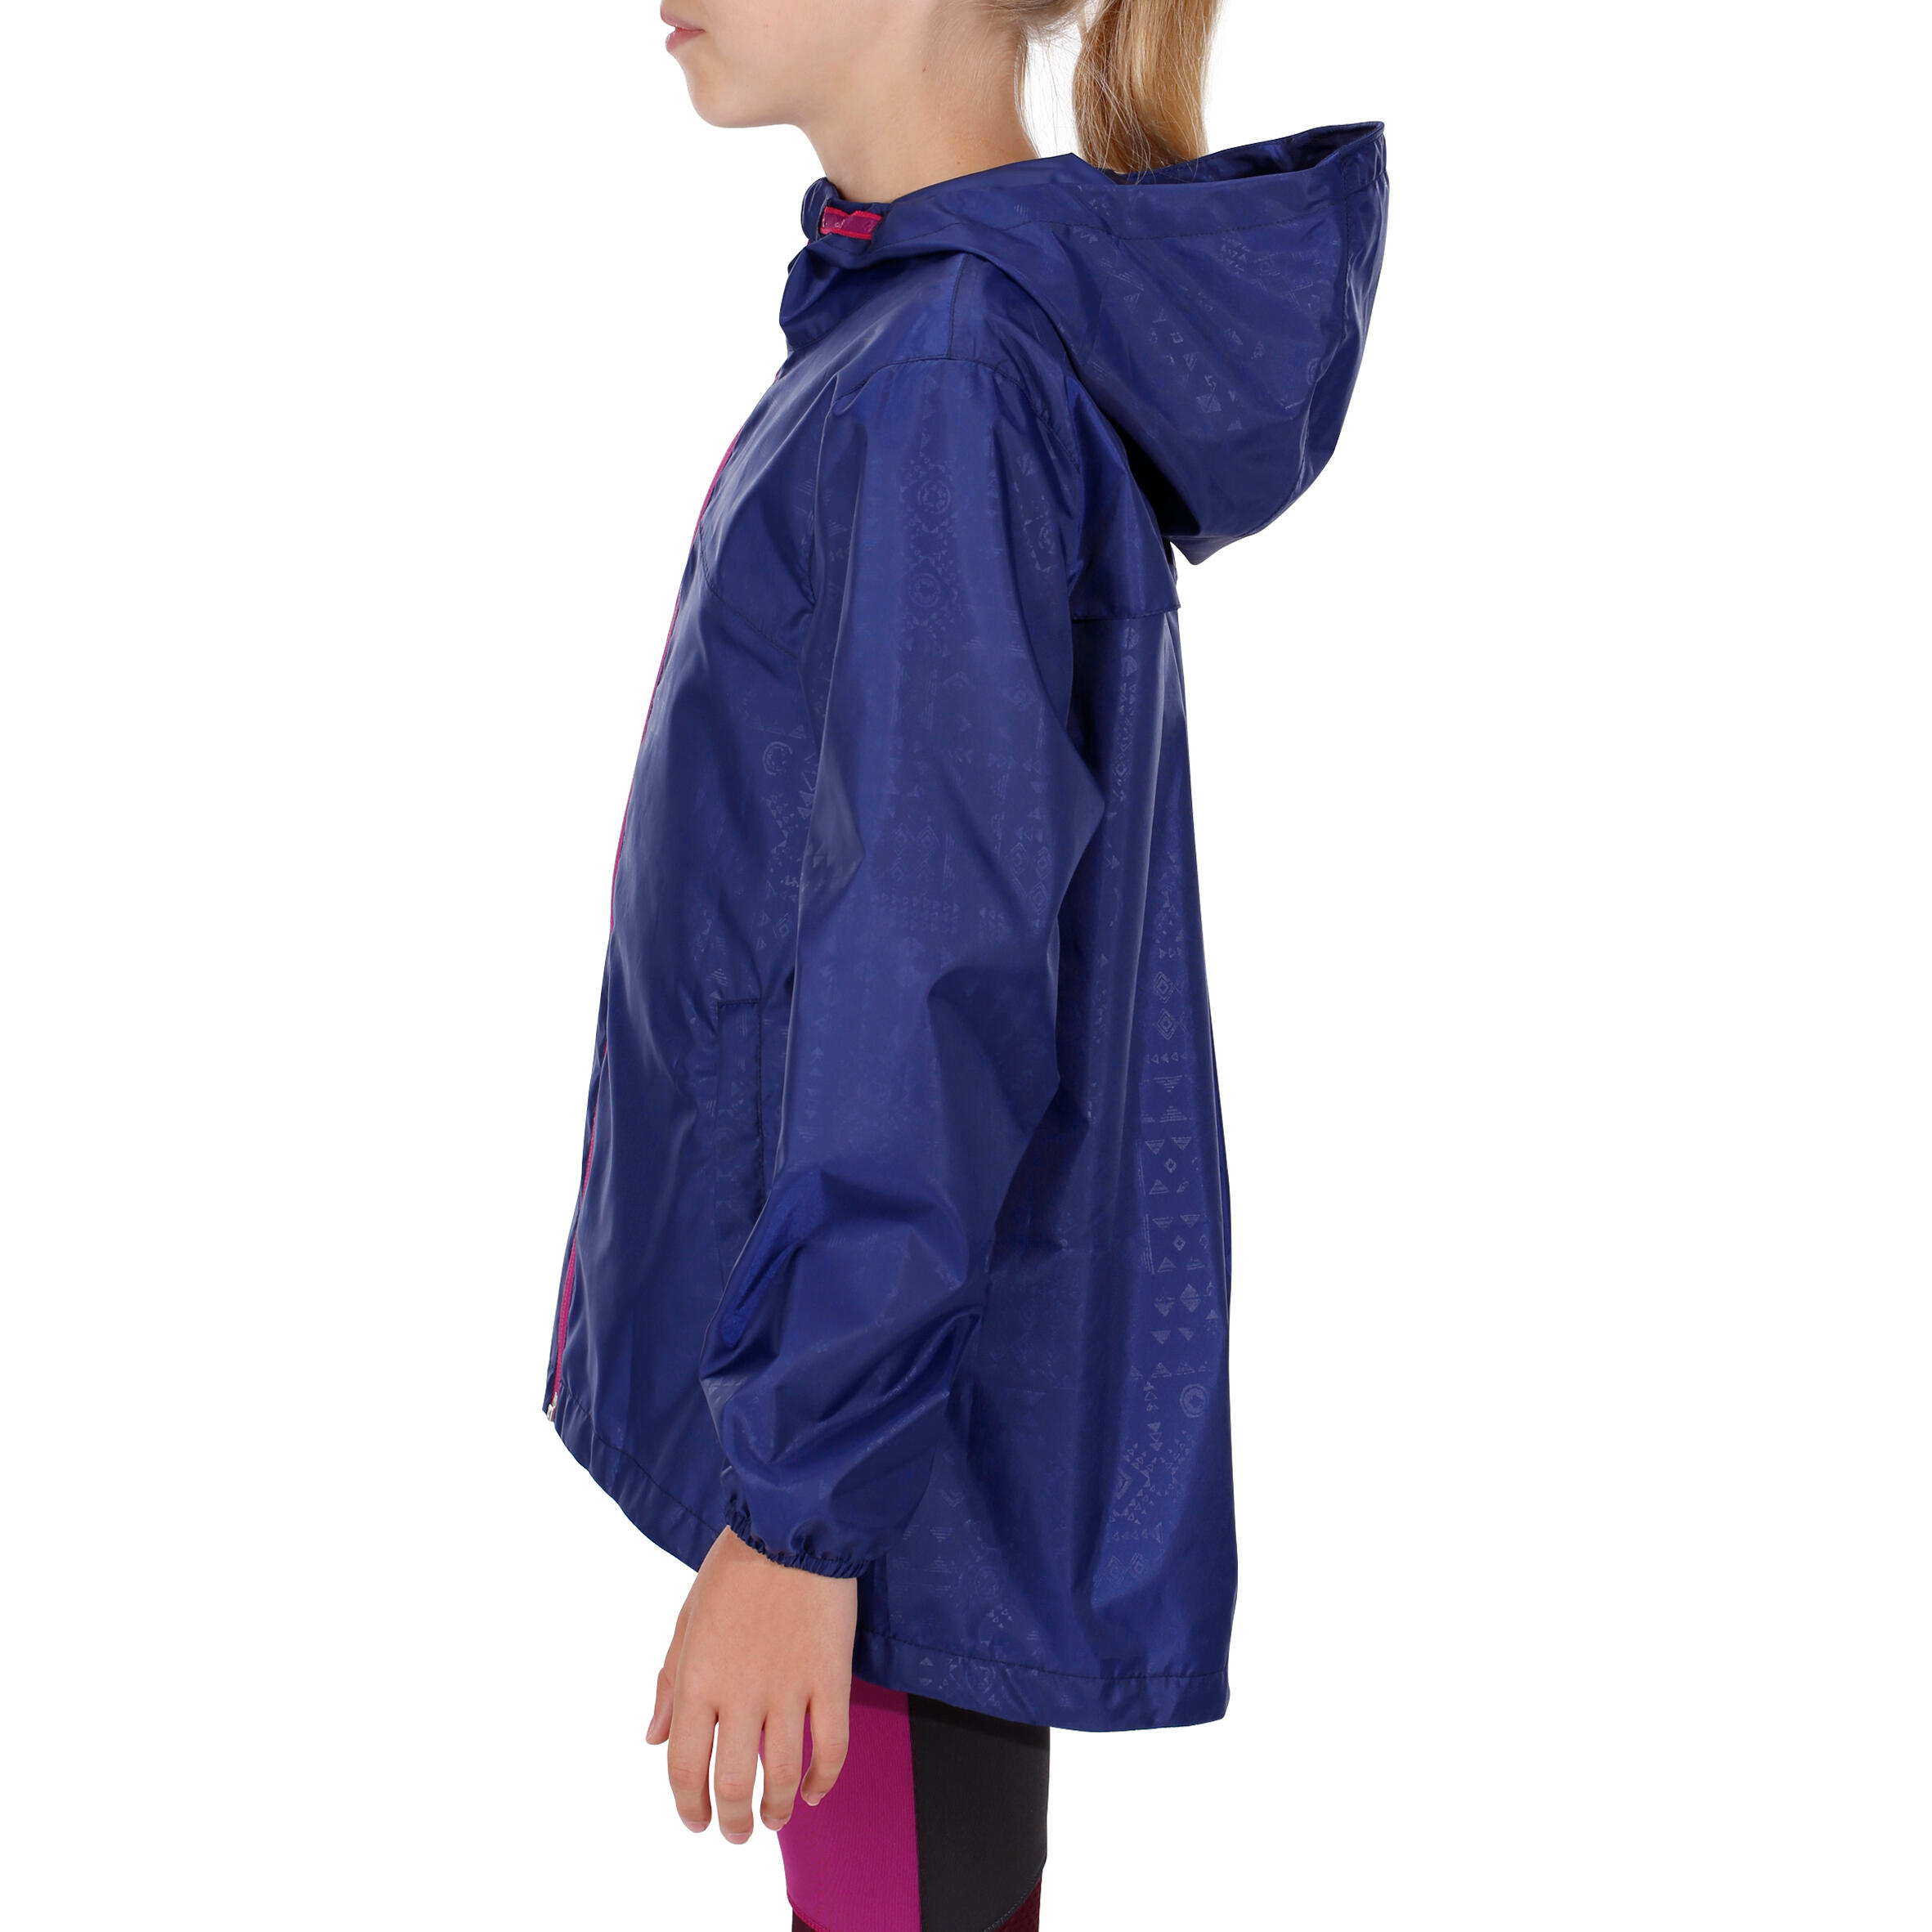 Hike 100 Waterproof Hiking Girl's Jacket - Navy Blue 6/14